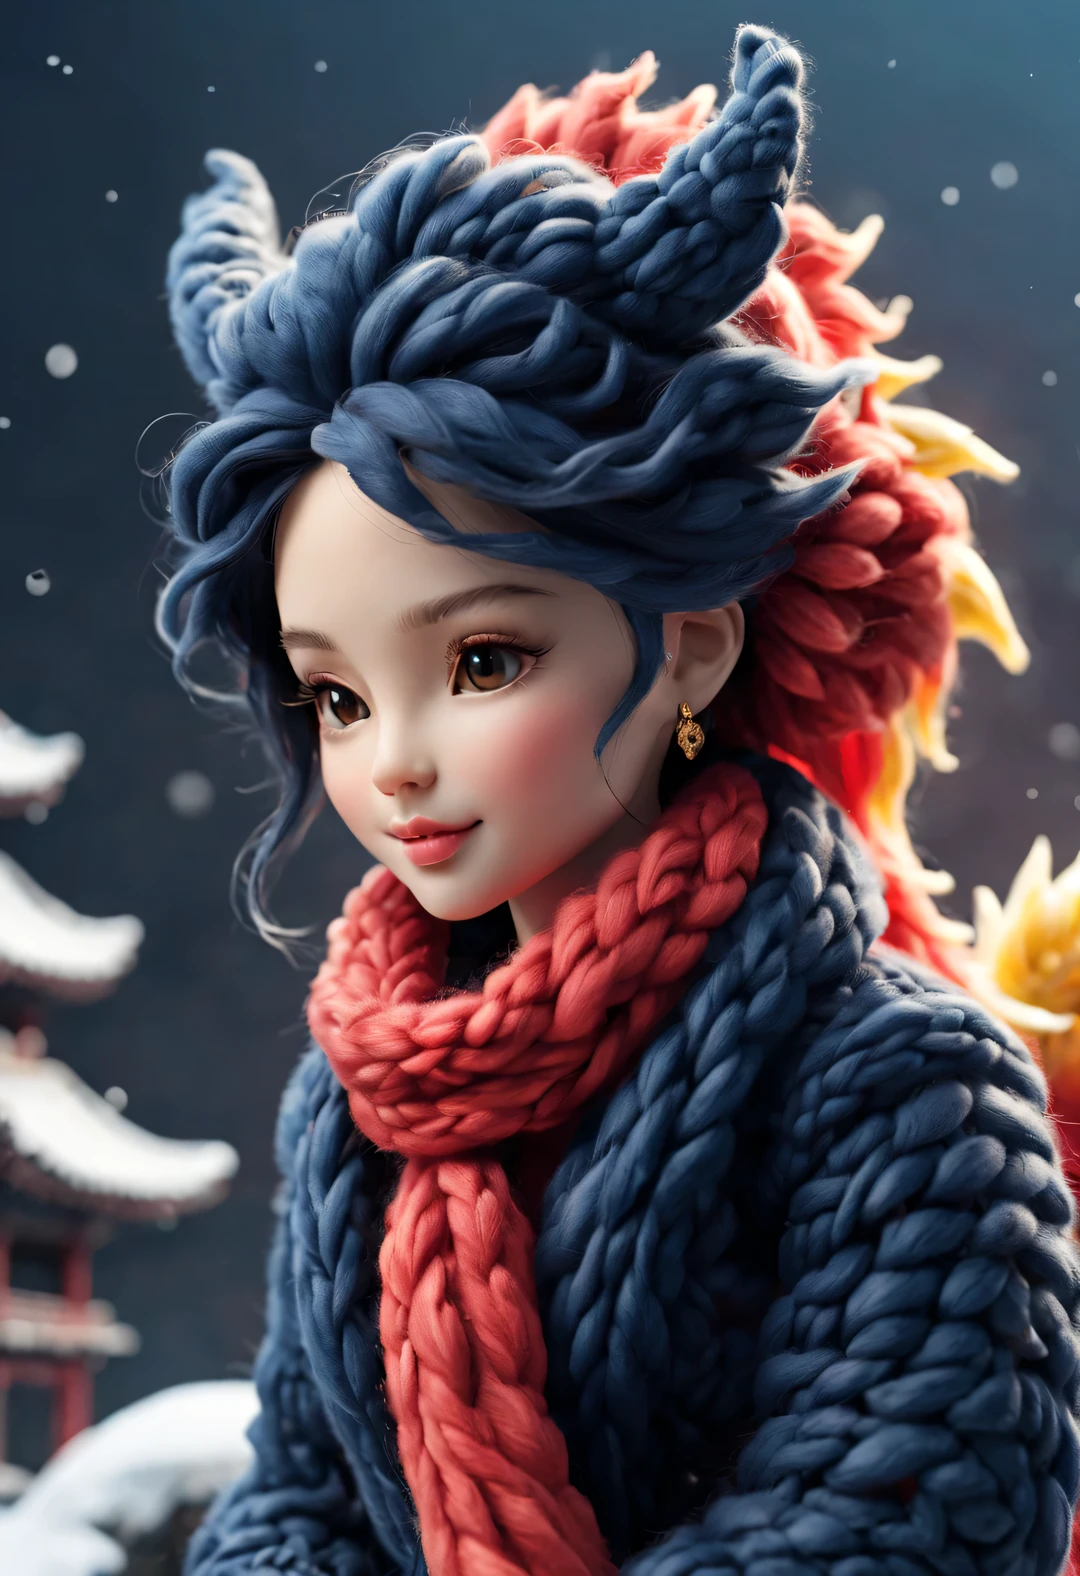 （毛绒玩具设计），微笑可爱的中国龙宝宝和芭比娃娃，（羊毛工艺品），（蓬松的：0.68） ，冬季高端华丽时尚中国风毛衣围巾， 可爱的 3d 渲染，背景：深蓝色和火红色，大雪纷飞的地面，金色的，可爱且细致的数字艺术，微型感觉，风格化 3d 渲染，3D 渲染人物艺术 8k，可爱的数字绘画，动漫风格3D，超精细渲染